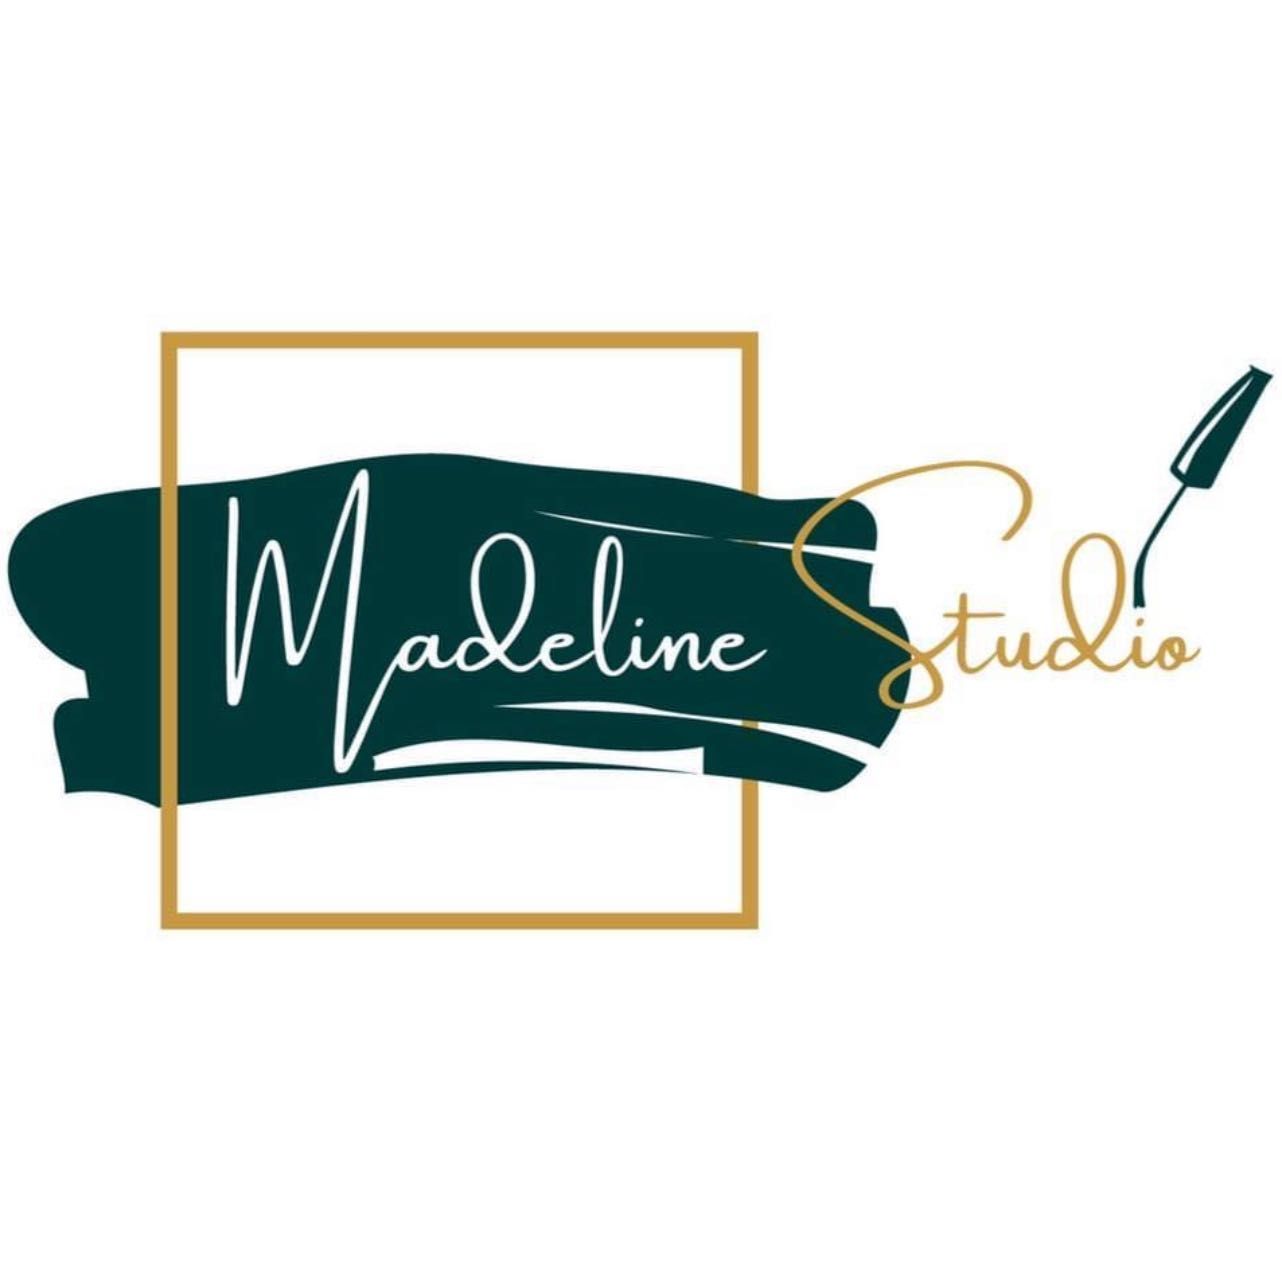 Madeline Studio Żoliborz, Adama Mickiewicza 25, U1, 01-551, Warszawa, Żoliborz